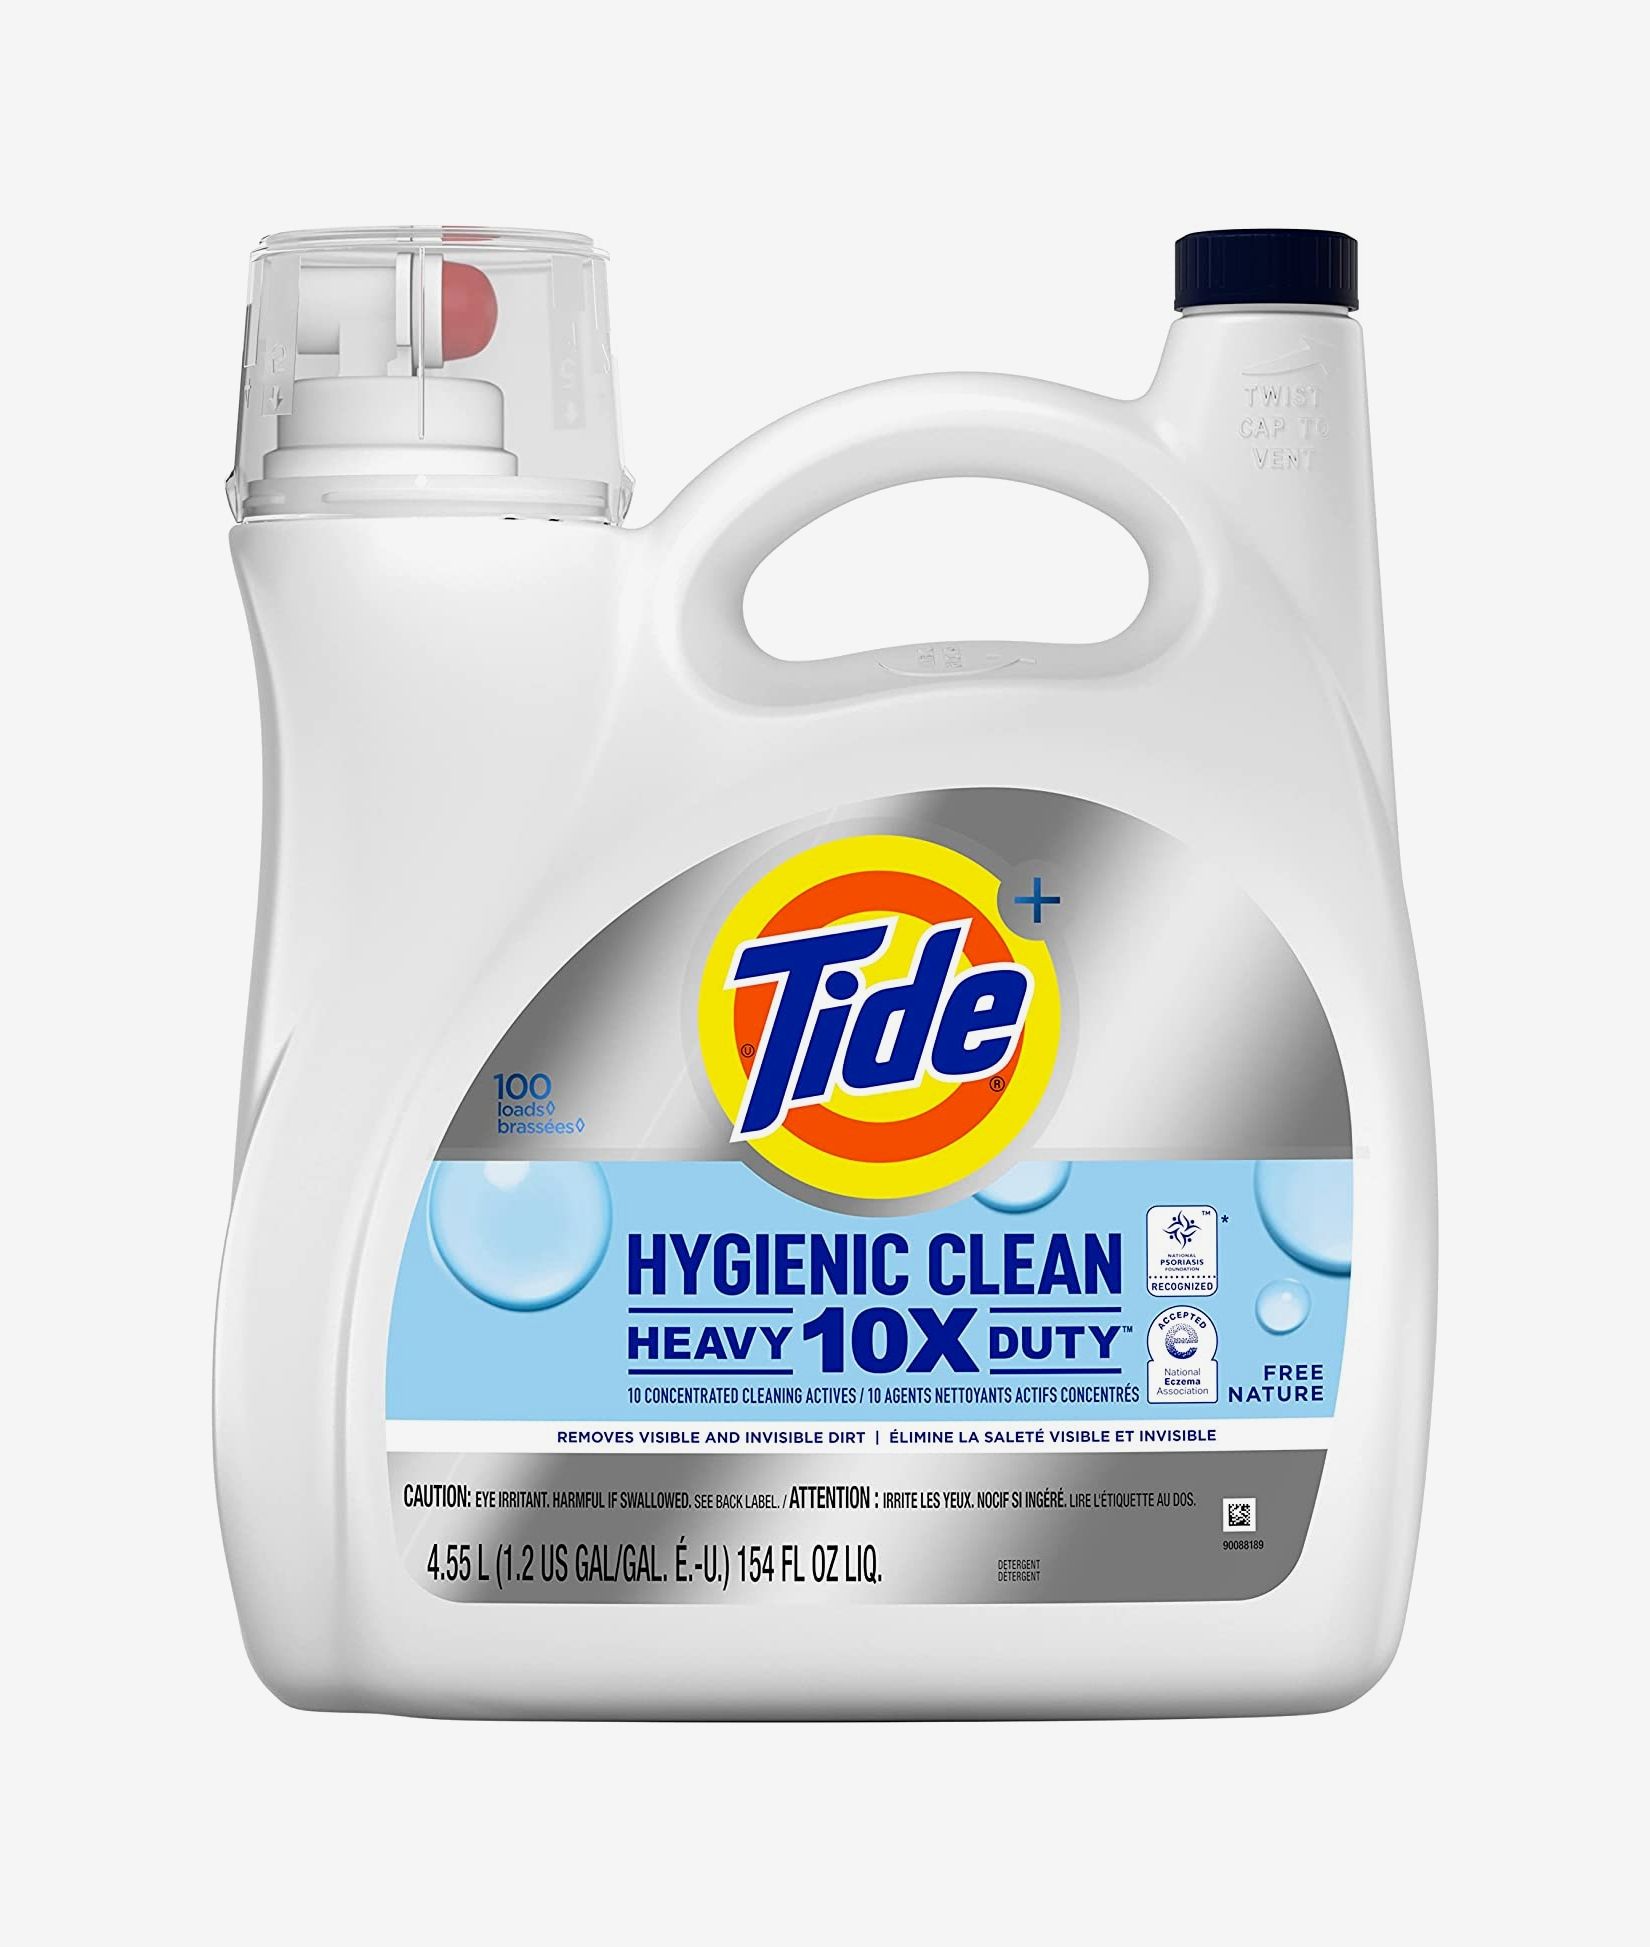  Soak Wash - Scentless 12 oz Laundry Detergent : Health